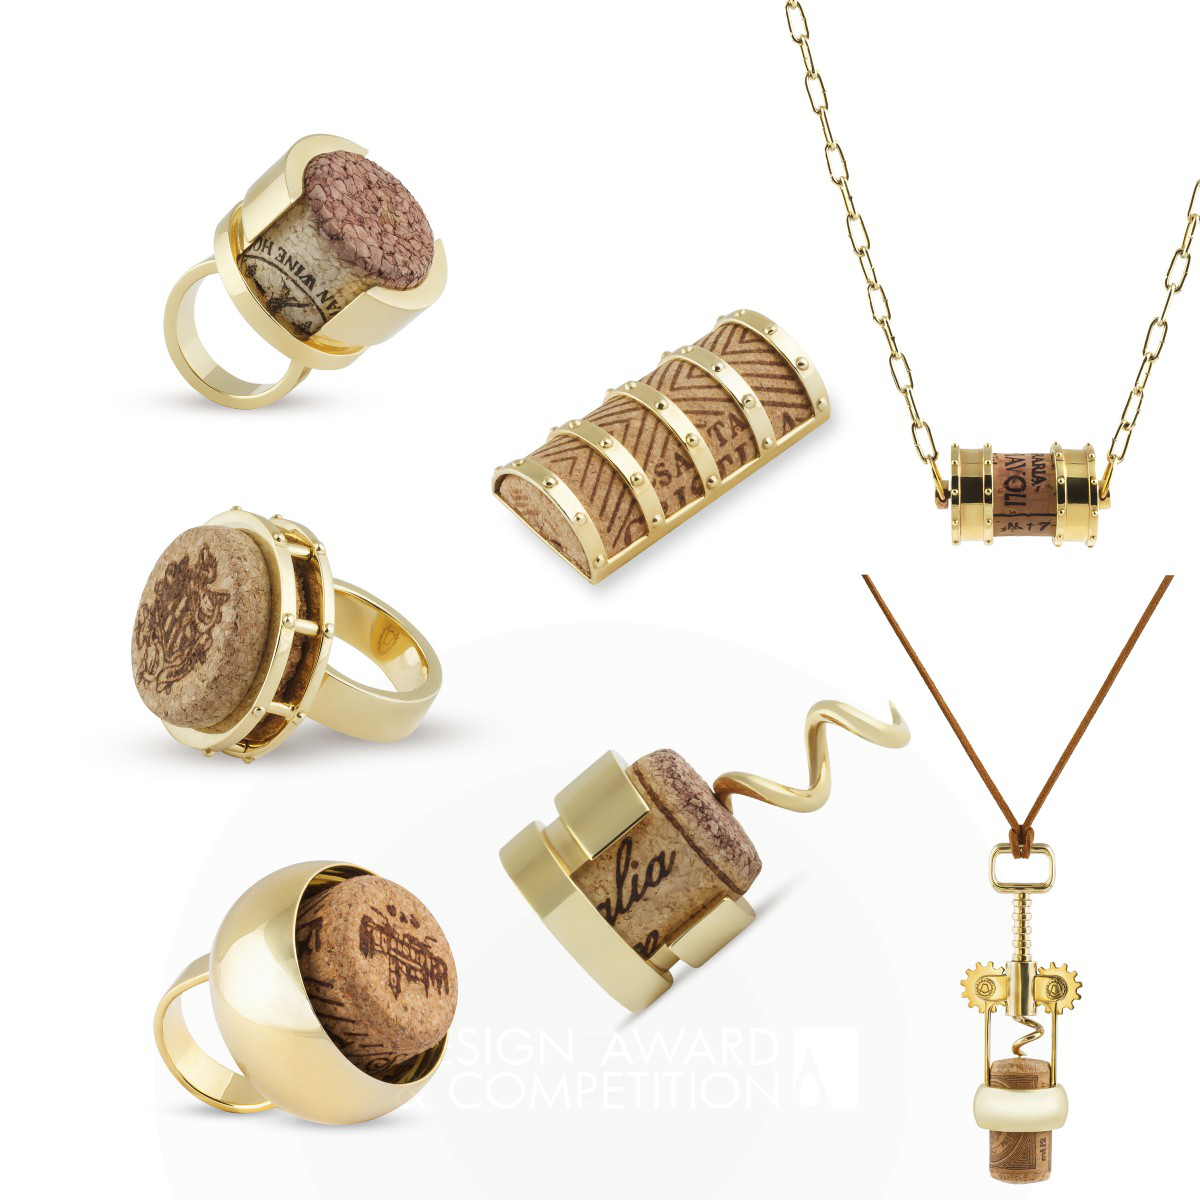 Anokhina Marina jewelry